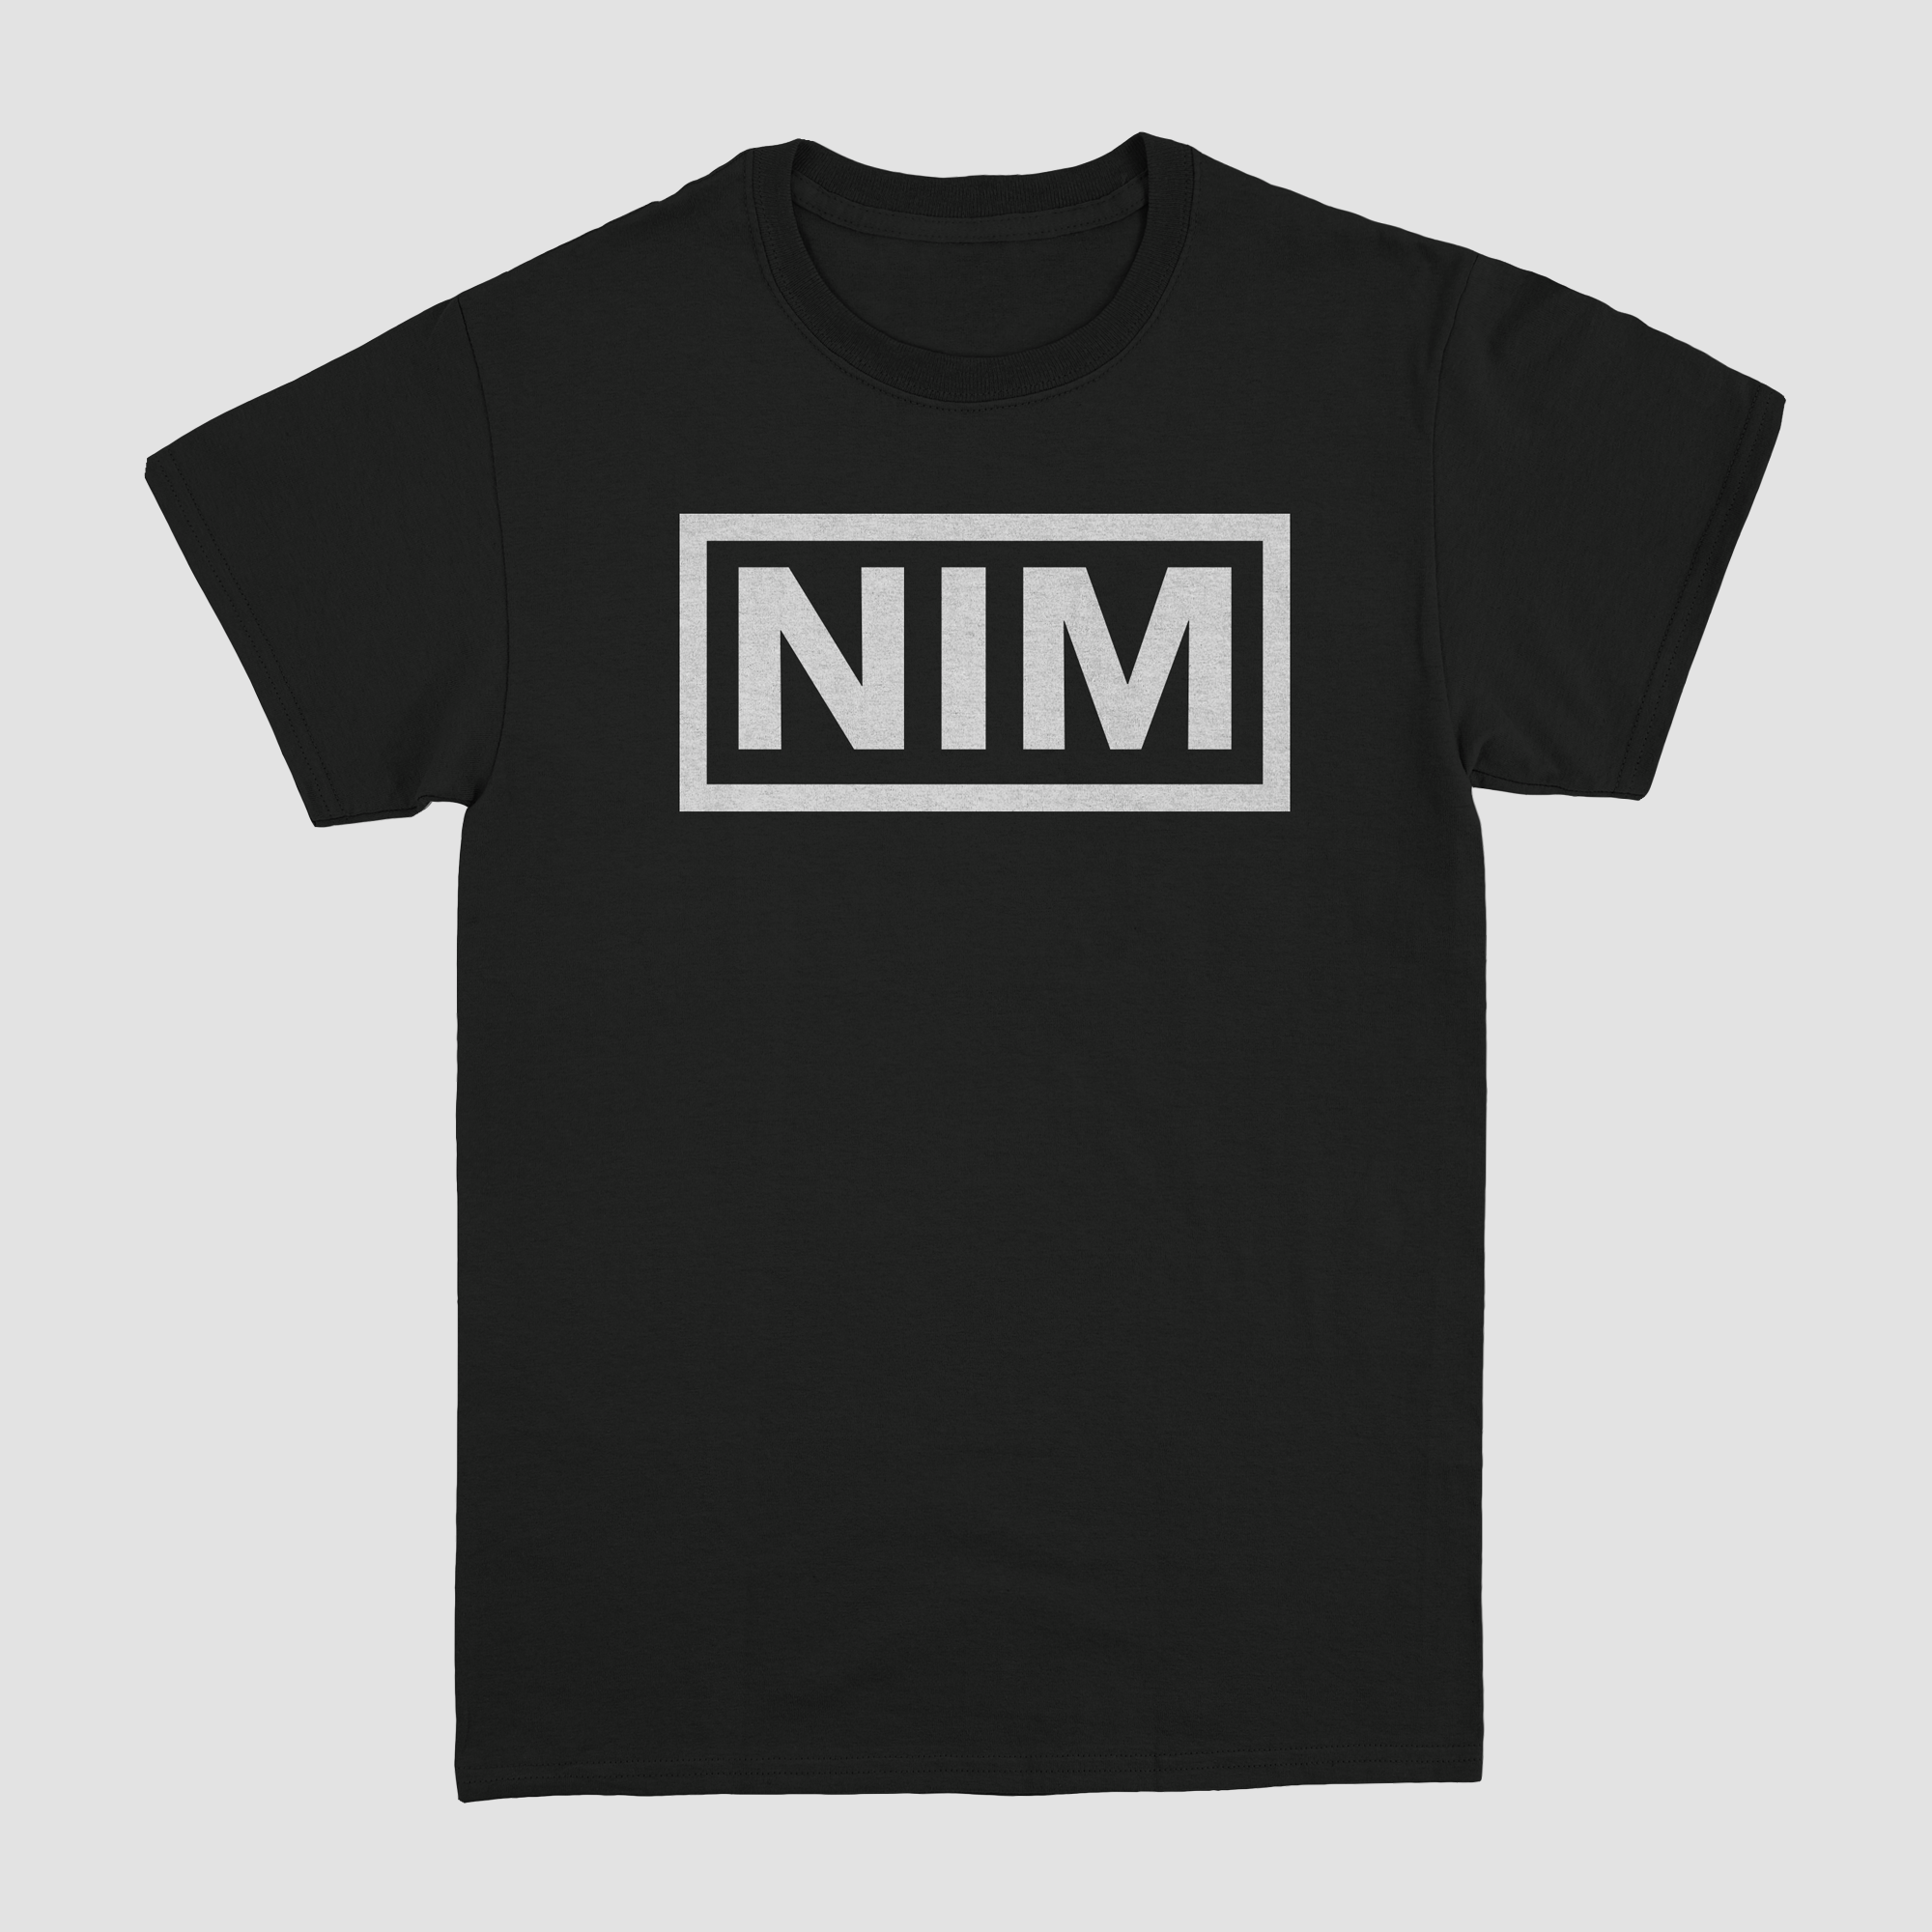 NIM LOGO "Limited Edition" T-Shirt